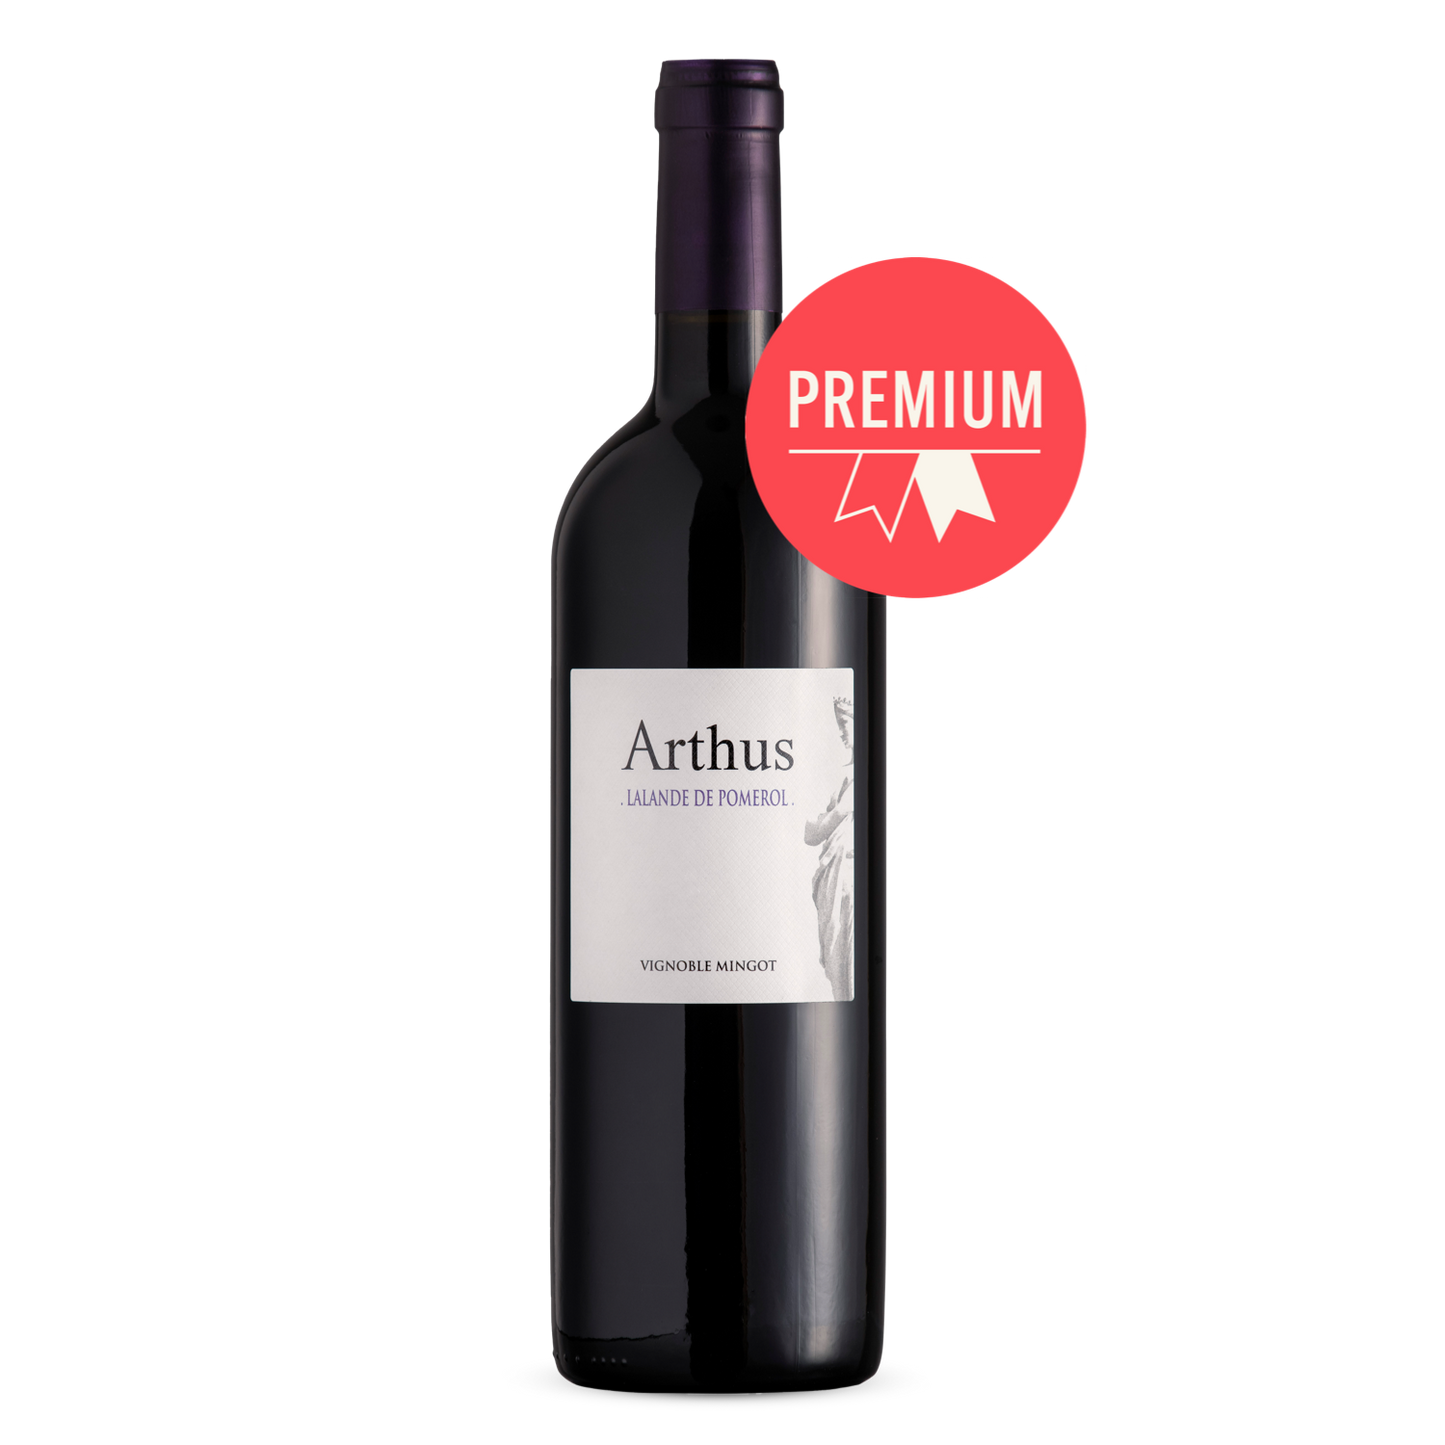 Vignoble Mingot - Cuvée Arthus 2018 - Premium